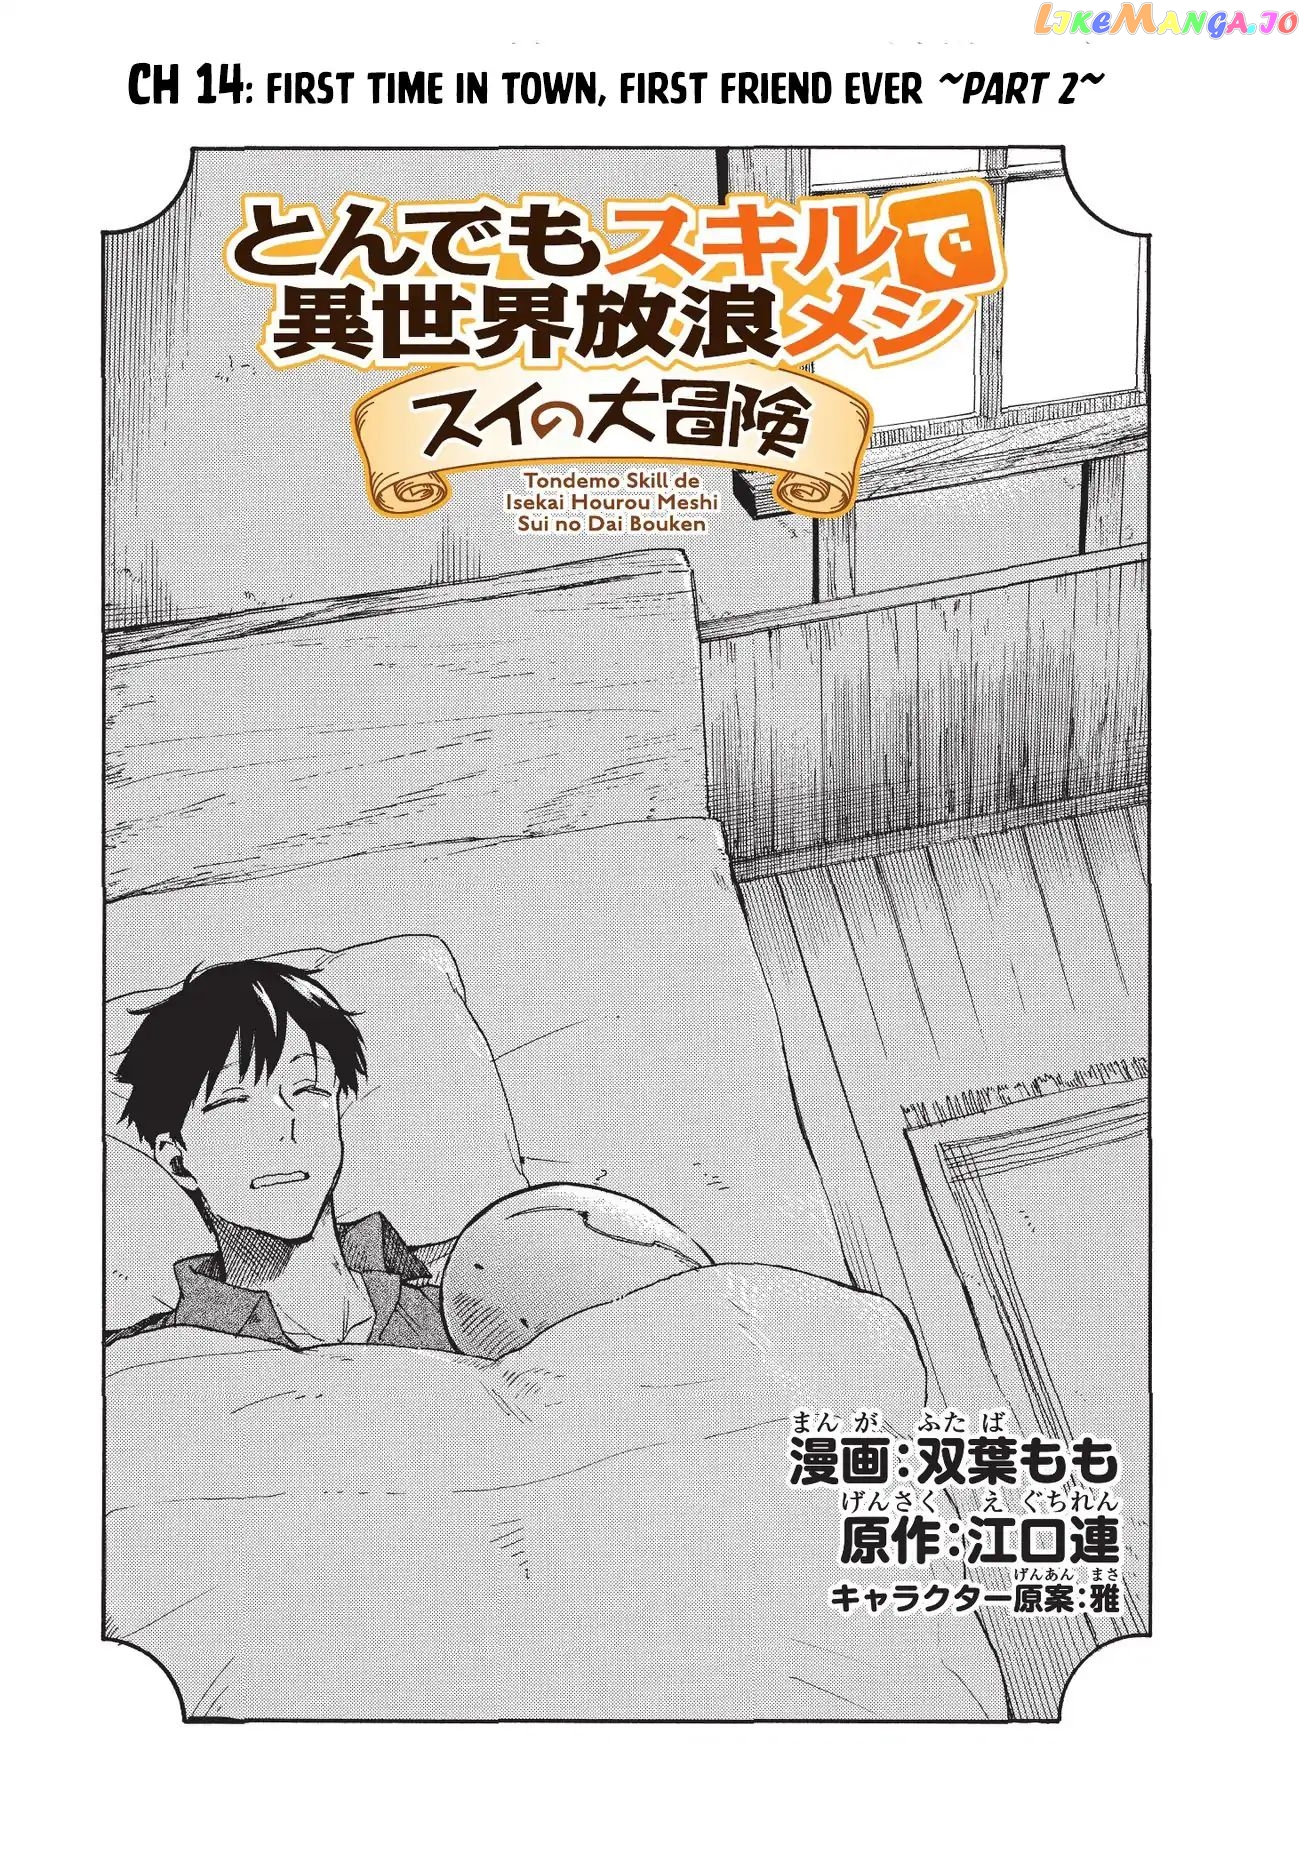 Tondemo Skill de Isekai Hourou Meshi: Sui no Daibouken chapter 14 - page 2